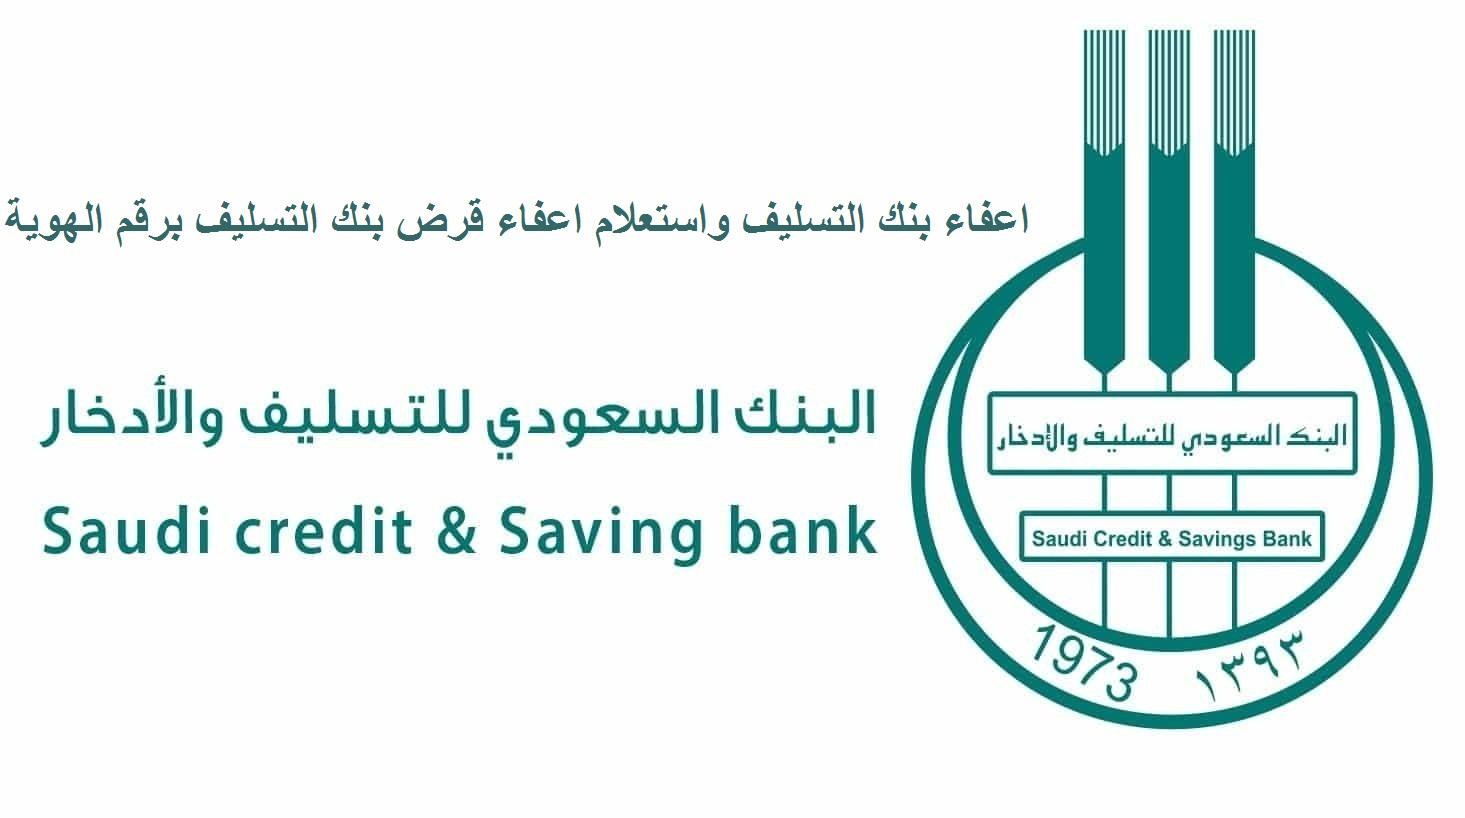 شروط الاستفادة من قرض بنك التسليف 1441 في السعودية وأنواعه ومواعيد سداد الأقساط